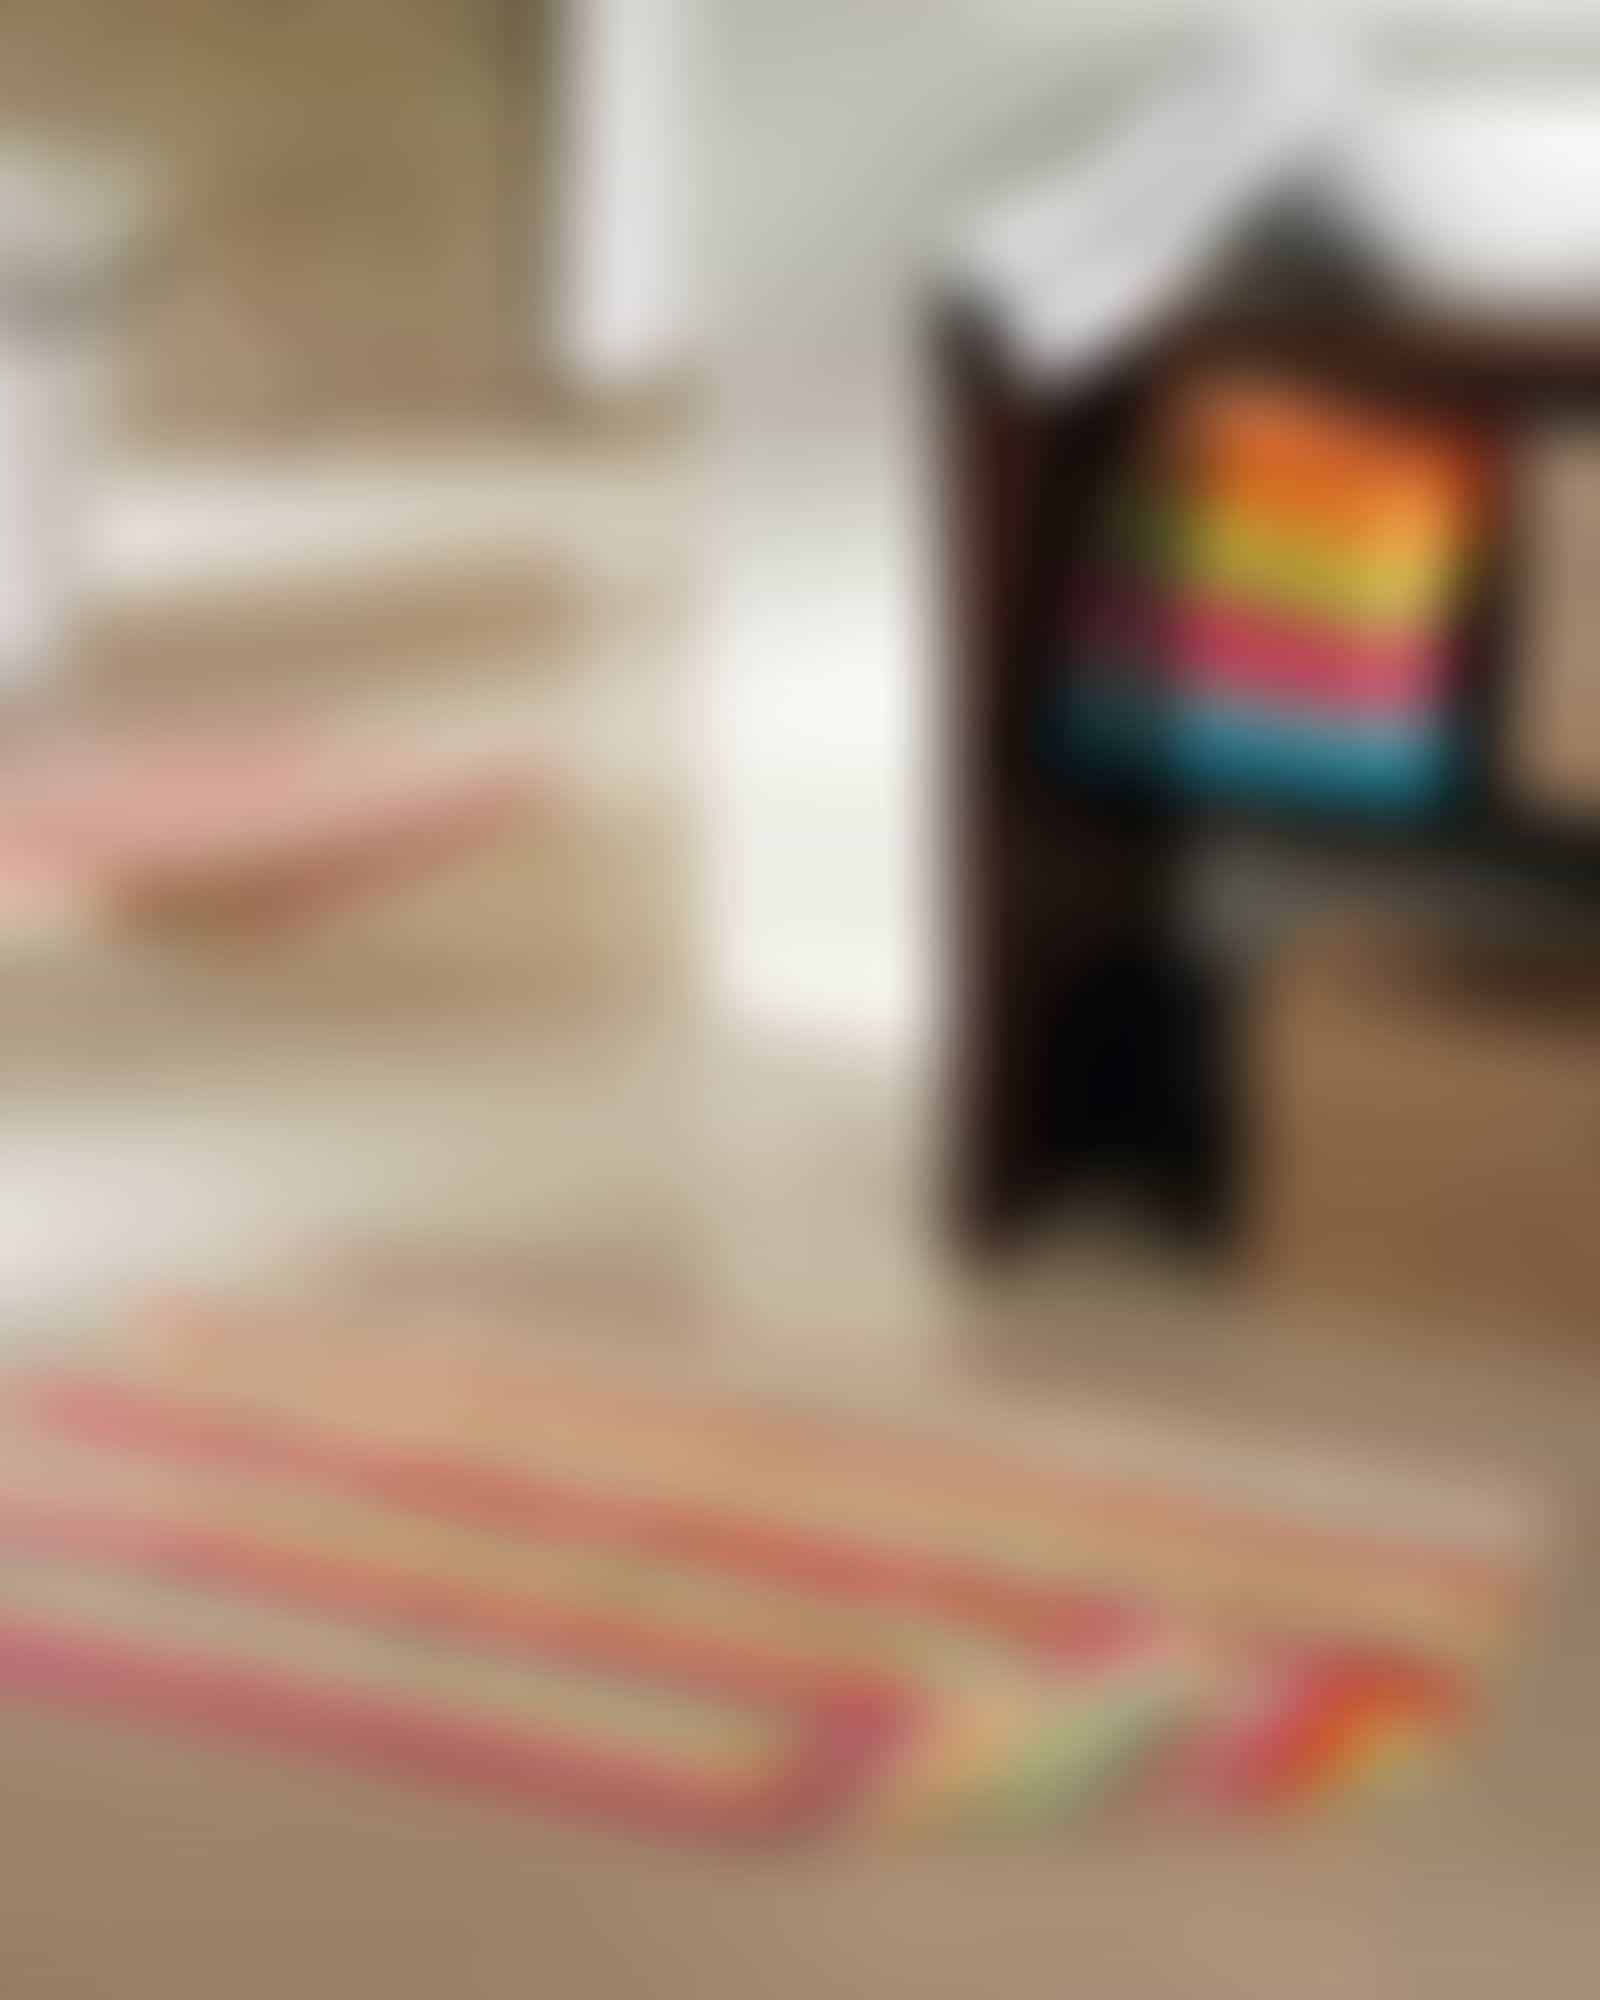 Cawö Home - Badteppich Life Style 7008 - Farbe: multicolor - 25 - 70x120 cm